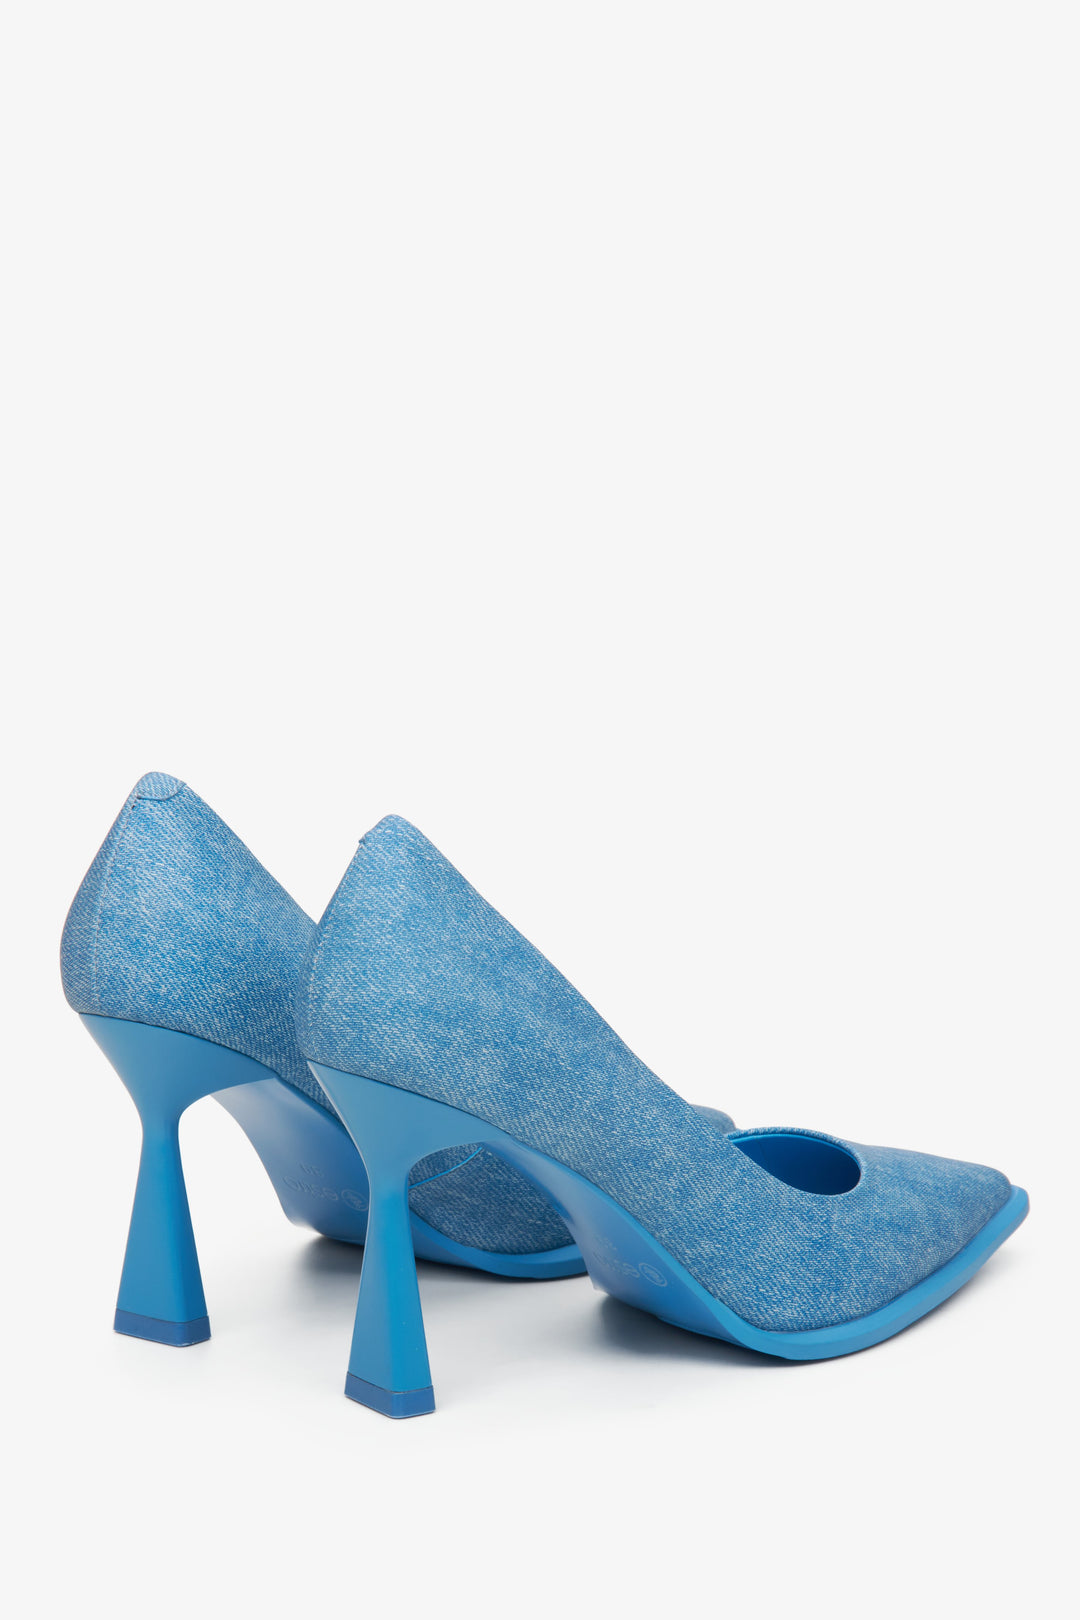 Jeansowe niebieskie szpilki damskie Estro - zbliżenie na obcas i linię boczną butów.